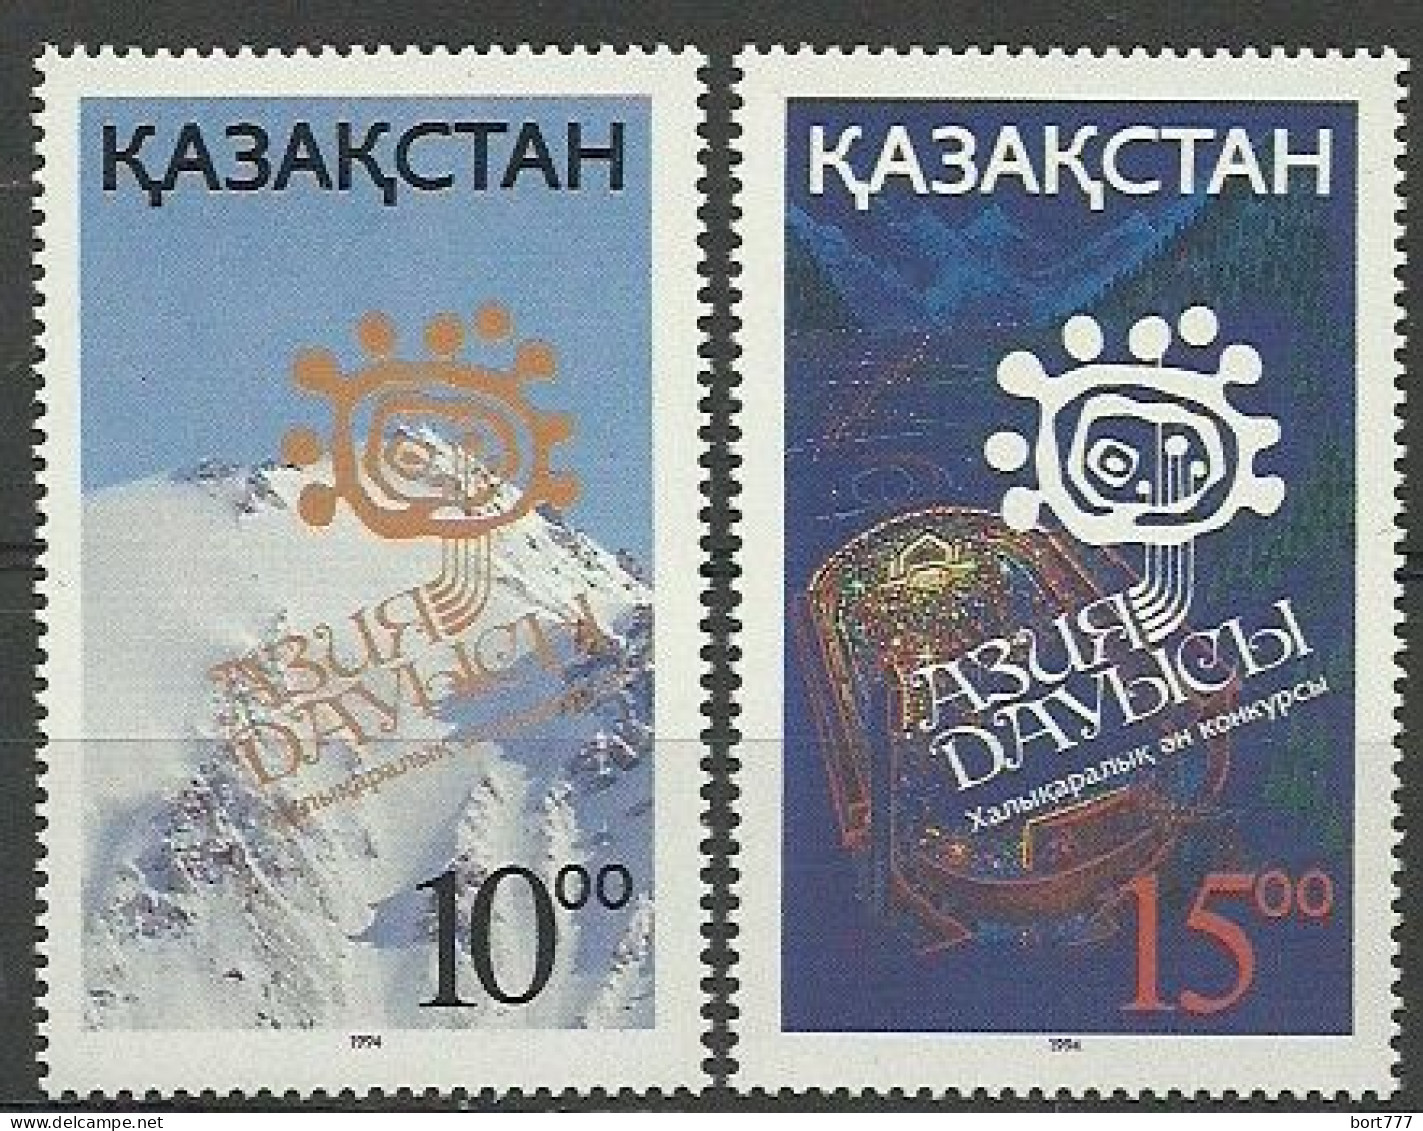 Kazakhstan 1994 Years Mint Stamps (MNH**)   - Kazakistan